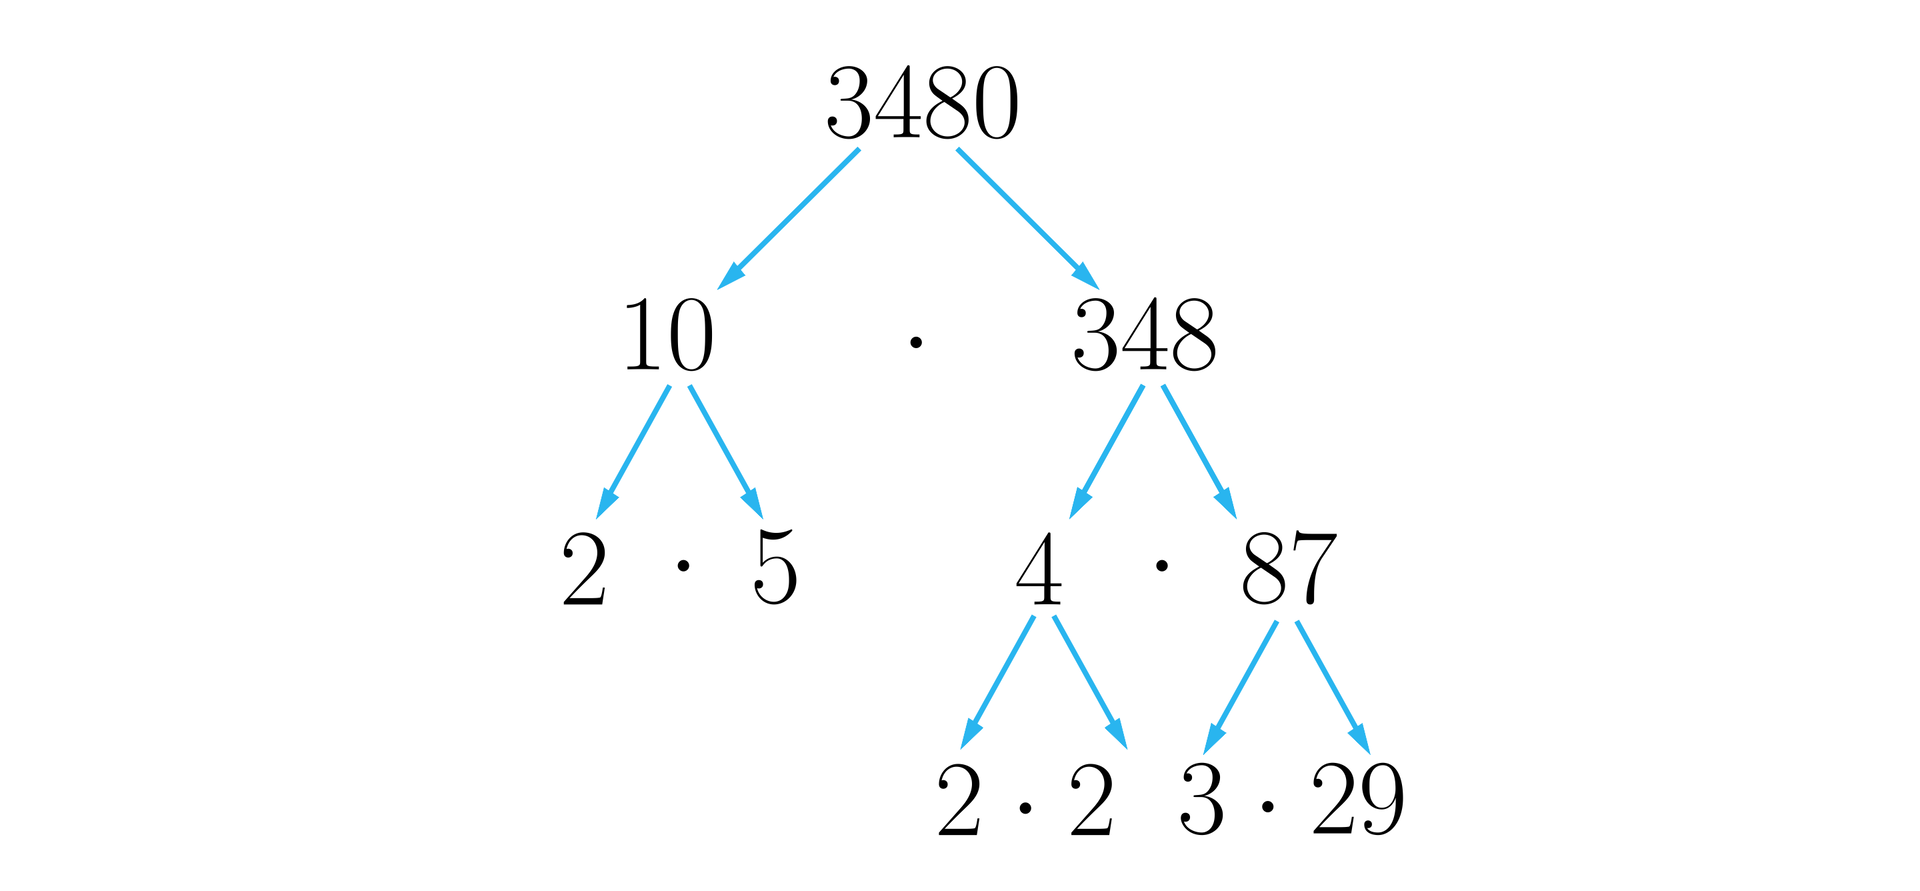 Na ilustracji przedstawiono rozkład liczby 3480 na czynniki pierwsze, zobrazowany za pomocą diagramu drzewa. Rozgałęzienia następują w dół a gałęzie zaznaczono za pomocą strzałek. Drzewo wygląda następująco. Liczba 3480 rozgałęzia się w dół na 10 i trzysta czterdzieści osiem. Liczby te leżą równolegle, a pomiędzy nimi umieszczono znak mnożenia. Liczba dziesięć rozgałęzia się na liczby dwa i pięć, między którymi analogicznie znajduje się znak mnożenia. Liczba 348 rozgałęzia się na 4 i osiemdziesiąt siedem. Liczba 4 rozgałęzia się na 2 i 2, natomiast liczba 87 rozgałęzia się na 3 i dwadzieścia dziewięć.